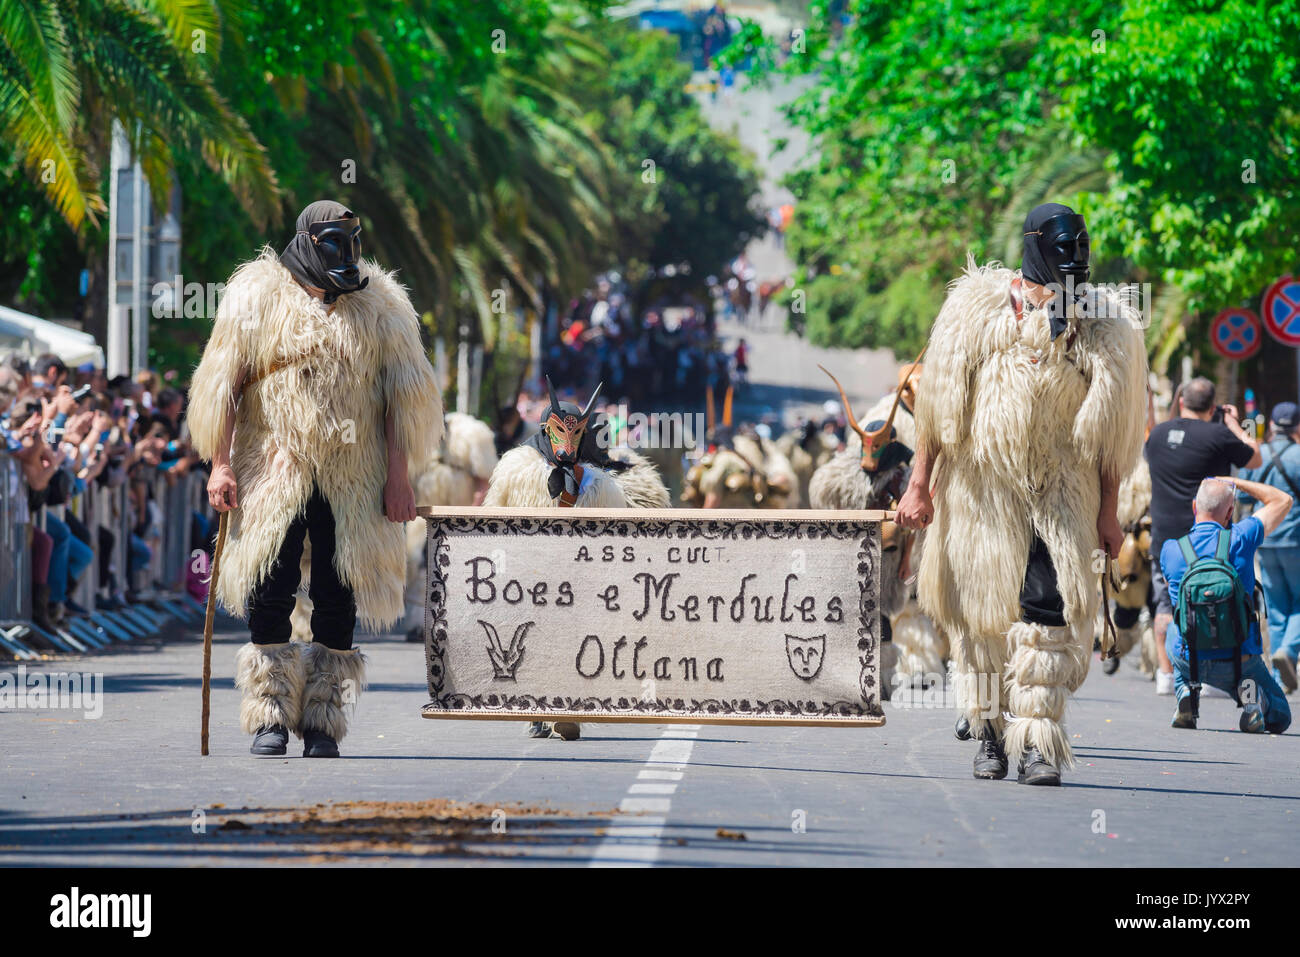 Sardinien traditionelle Fest, Männer gekleidet wie Boes und Merdules - traditionelle Figuren in Schafpelzen und Masken, in La Cavalcata, Sassari teilnehmen. Stockfoto